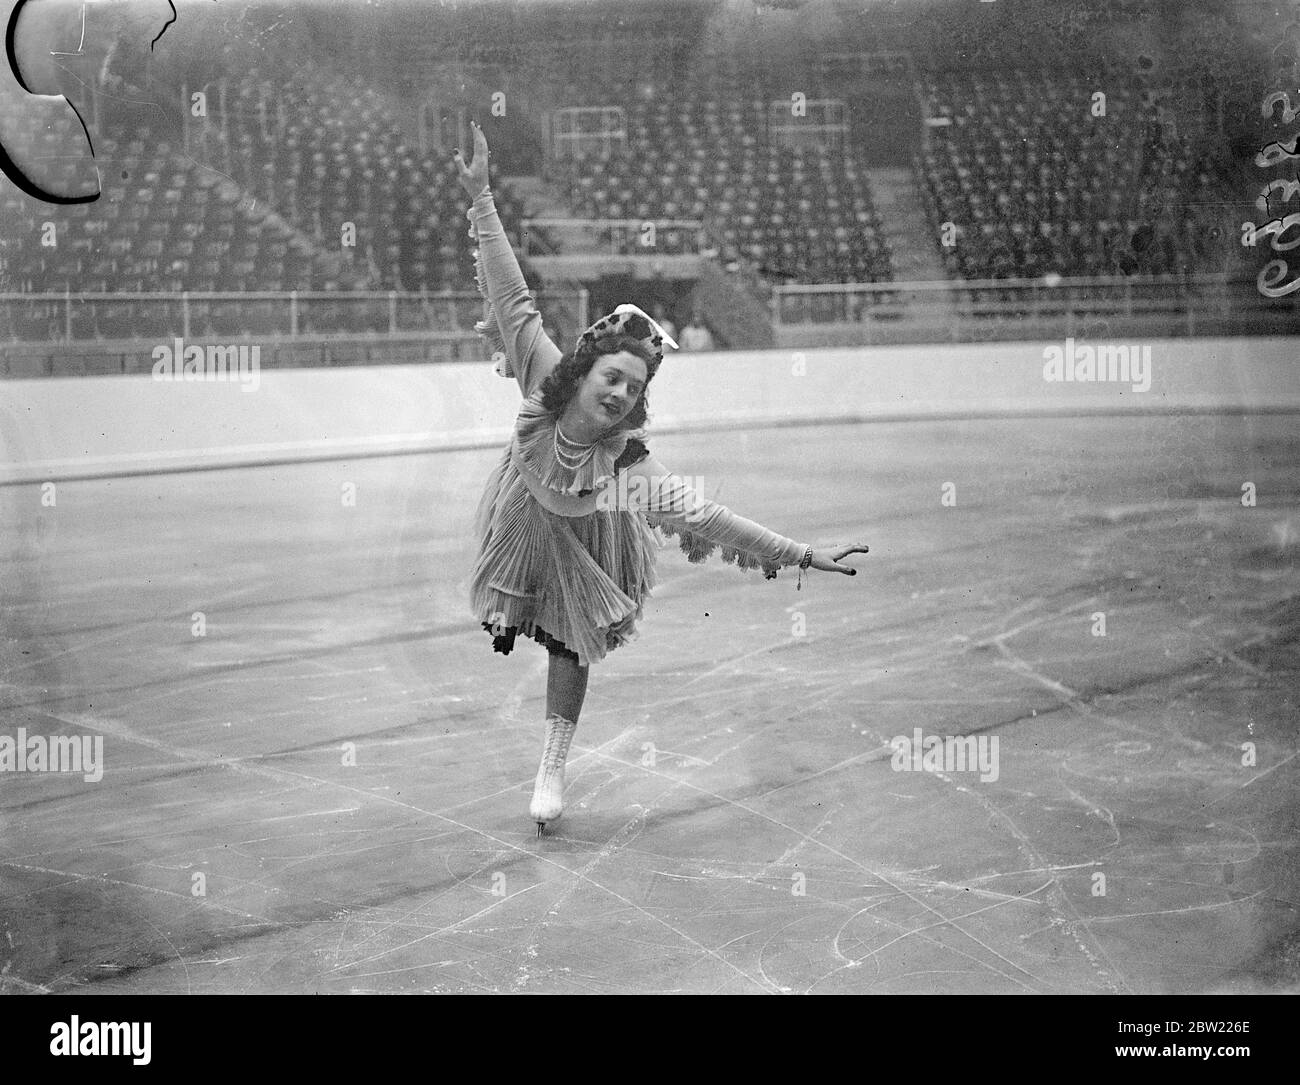 Mlle Megan Taylor a avalé la plongée avec élégance sur la glace à Haringey où elle était à la deuxième place du championnat du monde amateur 1937, elle a pratiqué sur la glace pour l'exposition de patinage artistique et freestyle. 16 septembre 1937. Banque D'Images